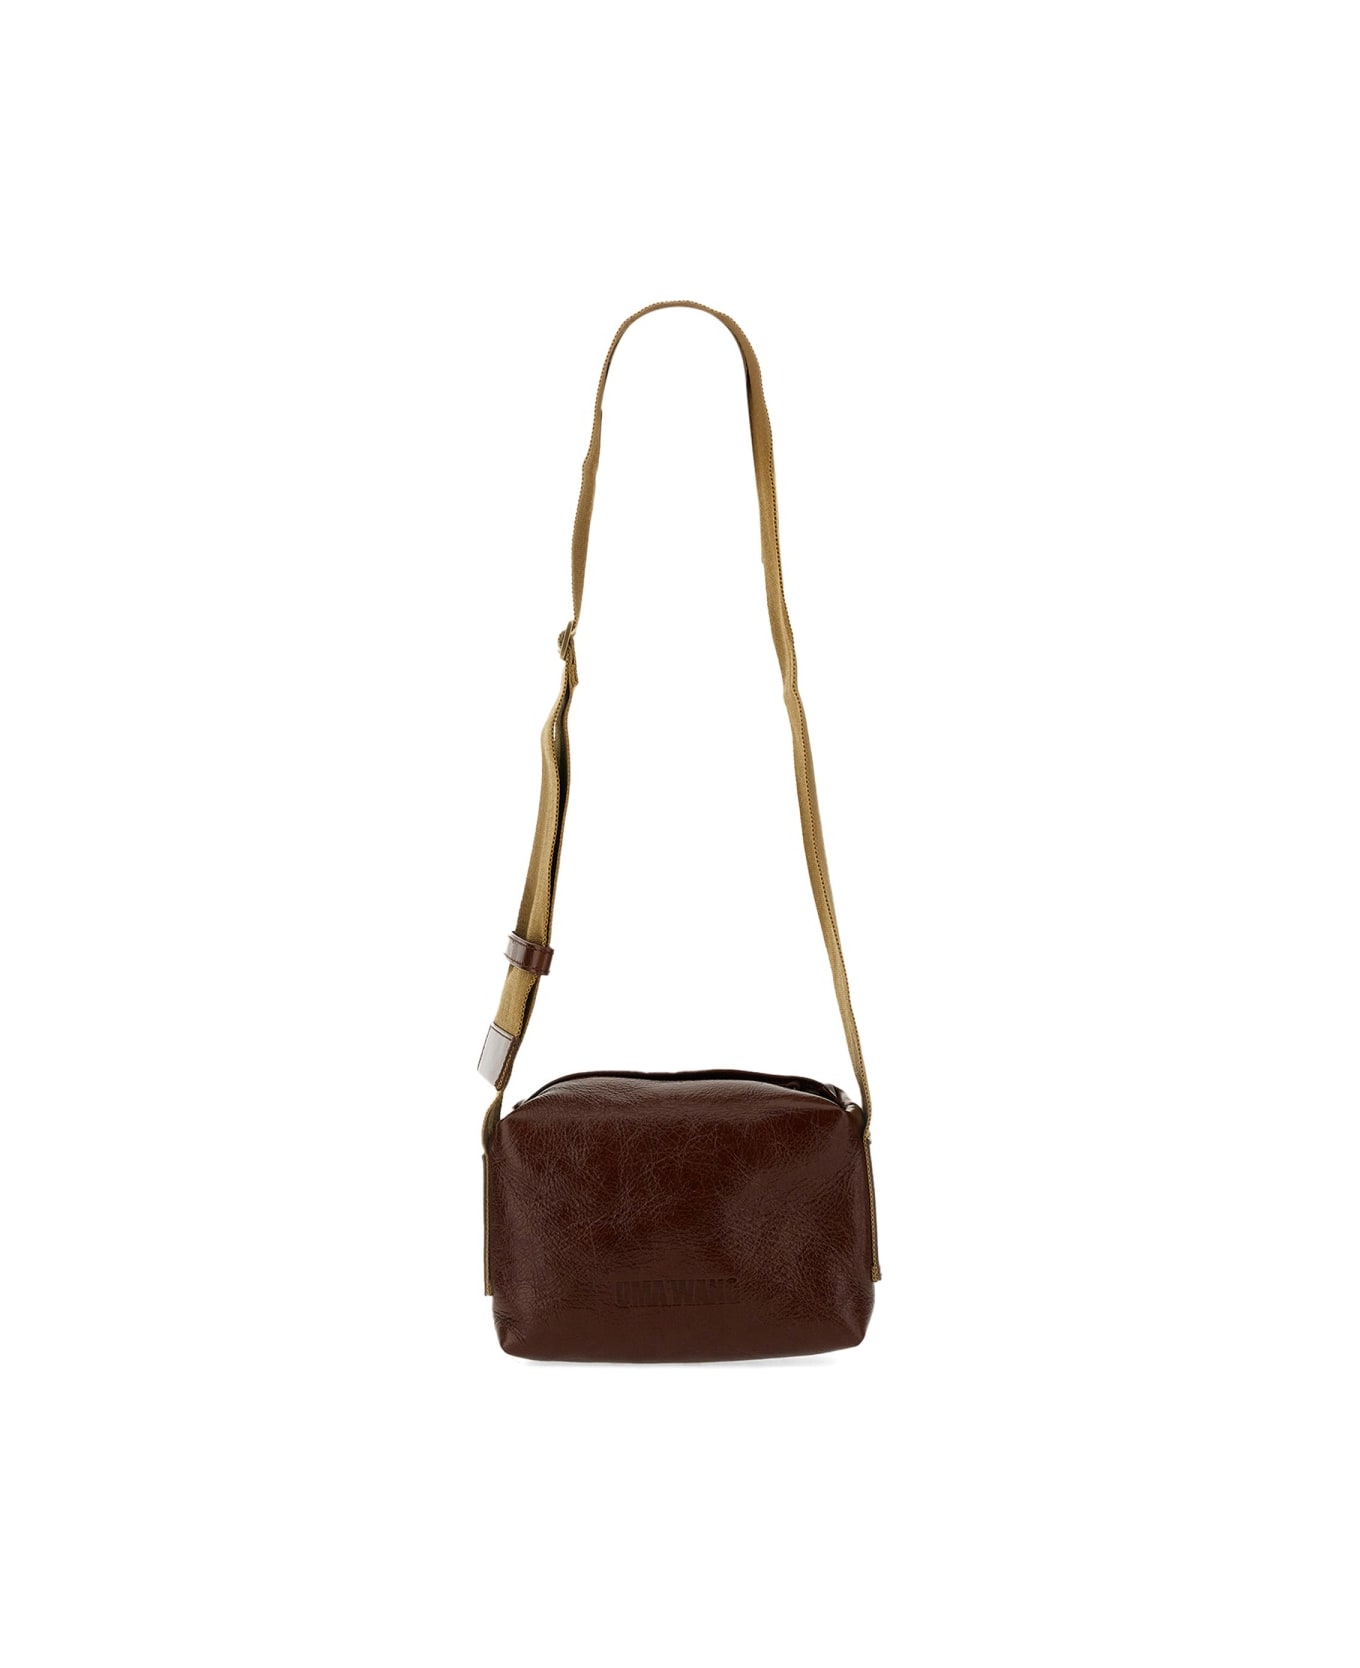 Uma Wang Small Leather Bag - BROWN ショルダーバッグ